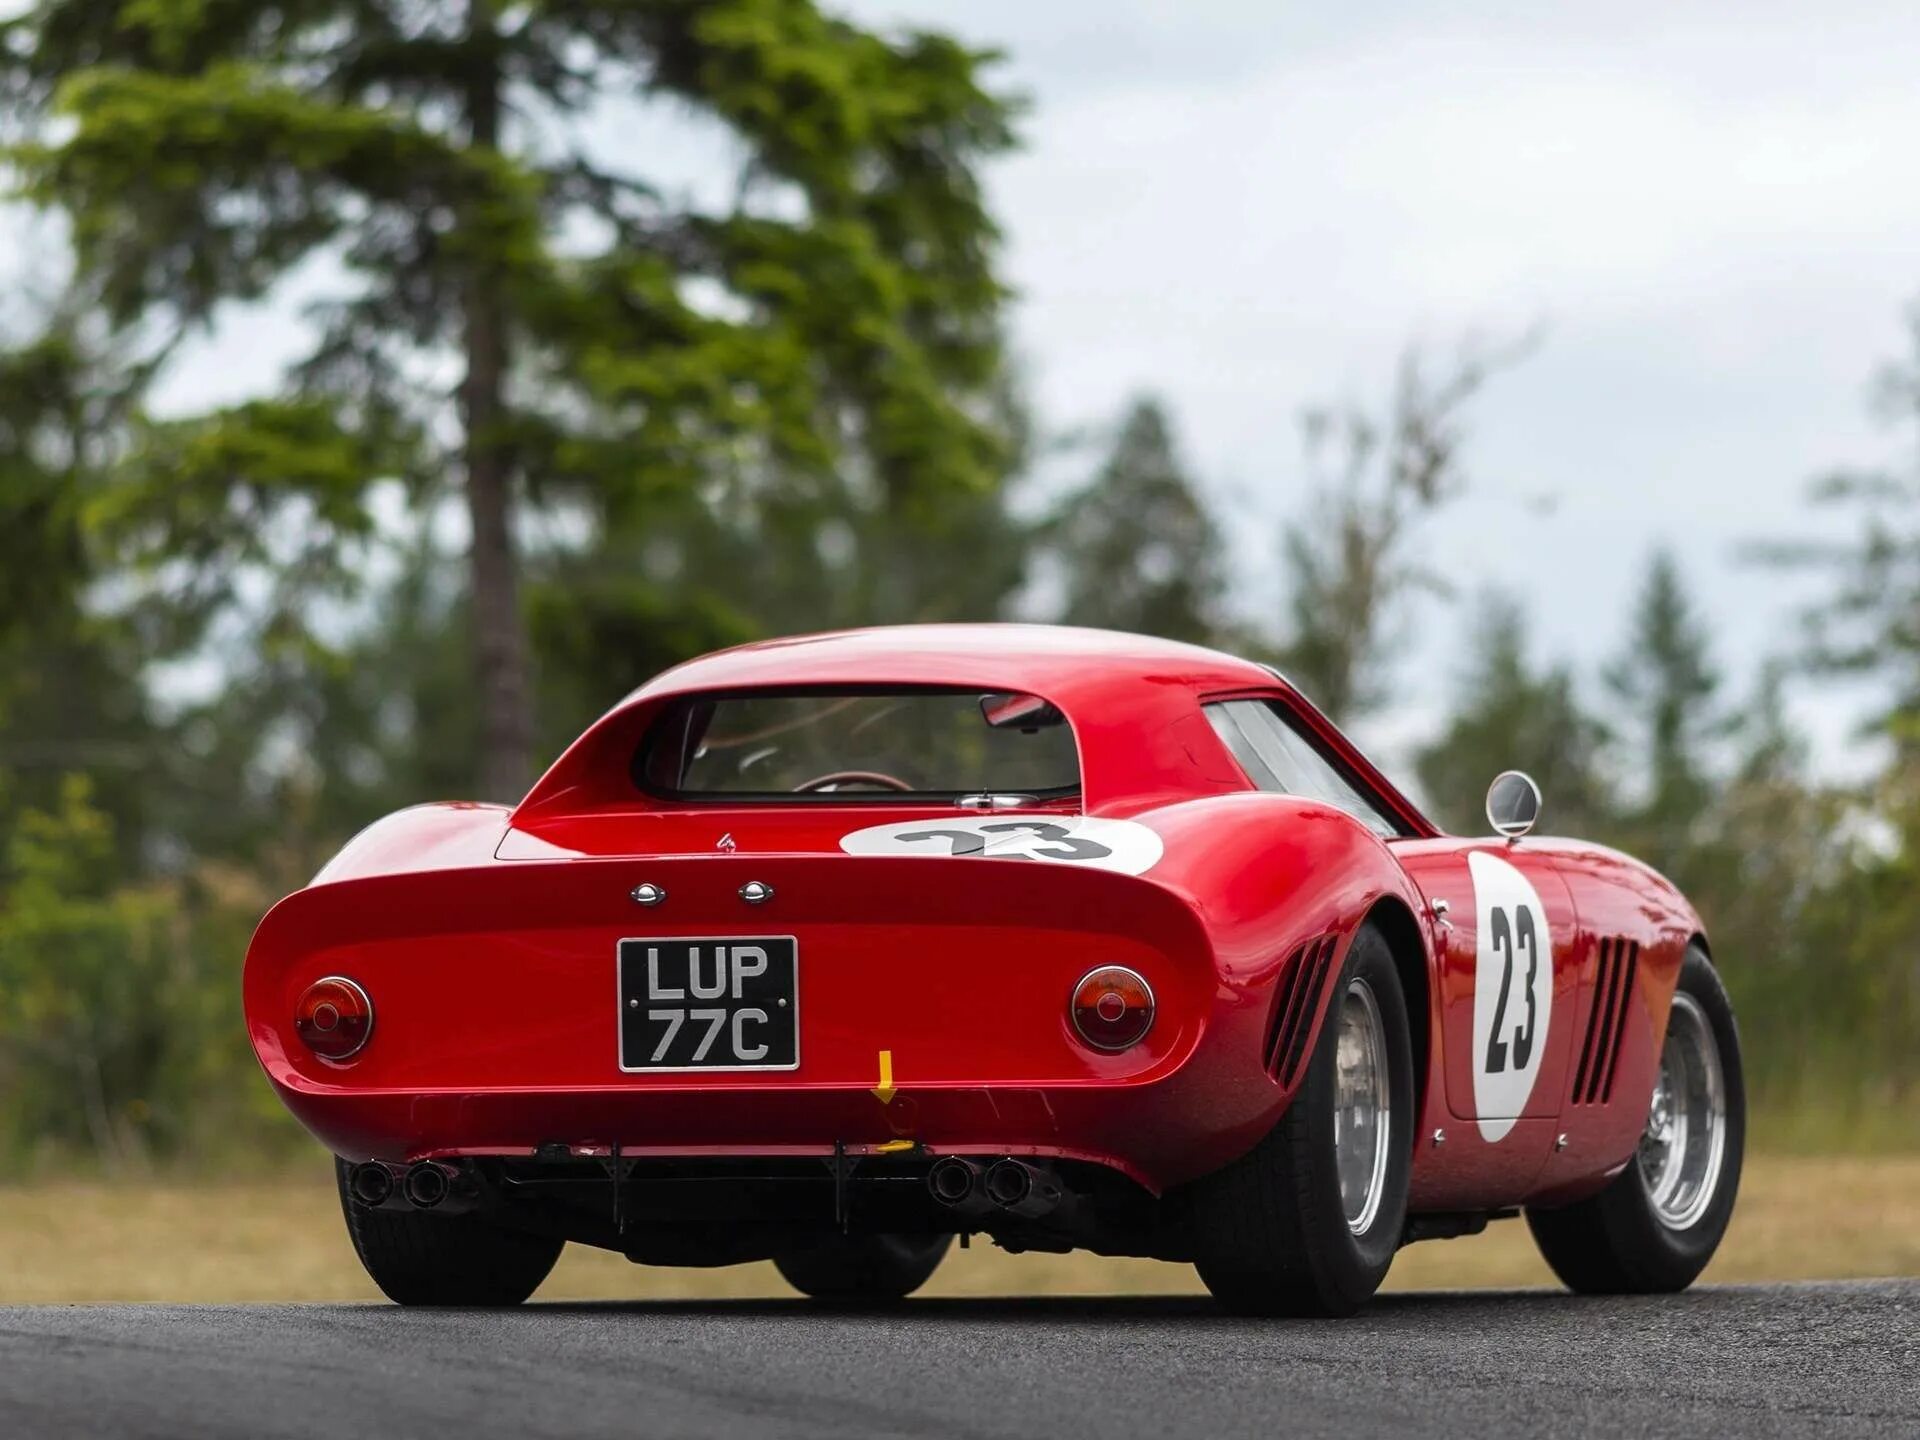 Ferrari 250 gto 1962. Ferrari 250 GTO. 1. Ferrari 250 GTO. Ferrari 250 GTO 1963.